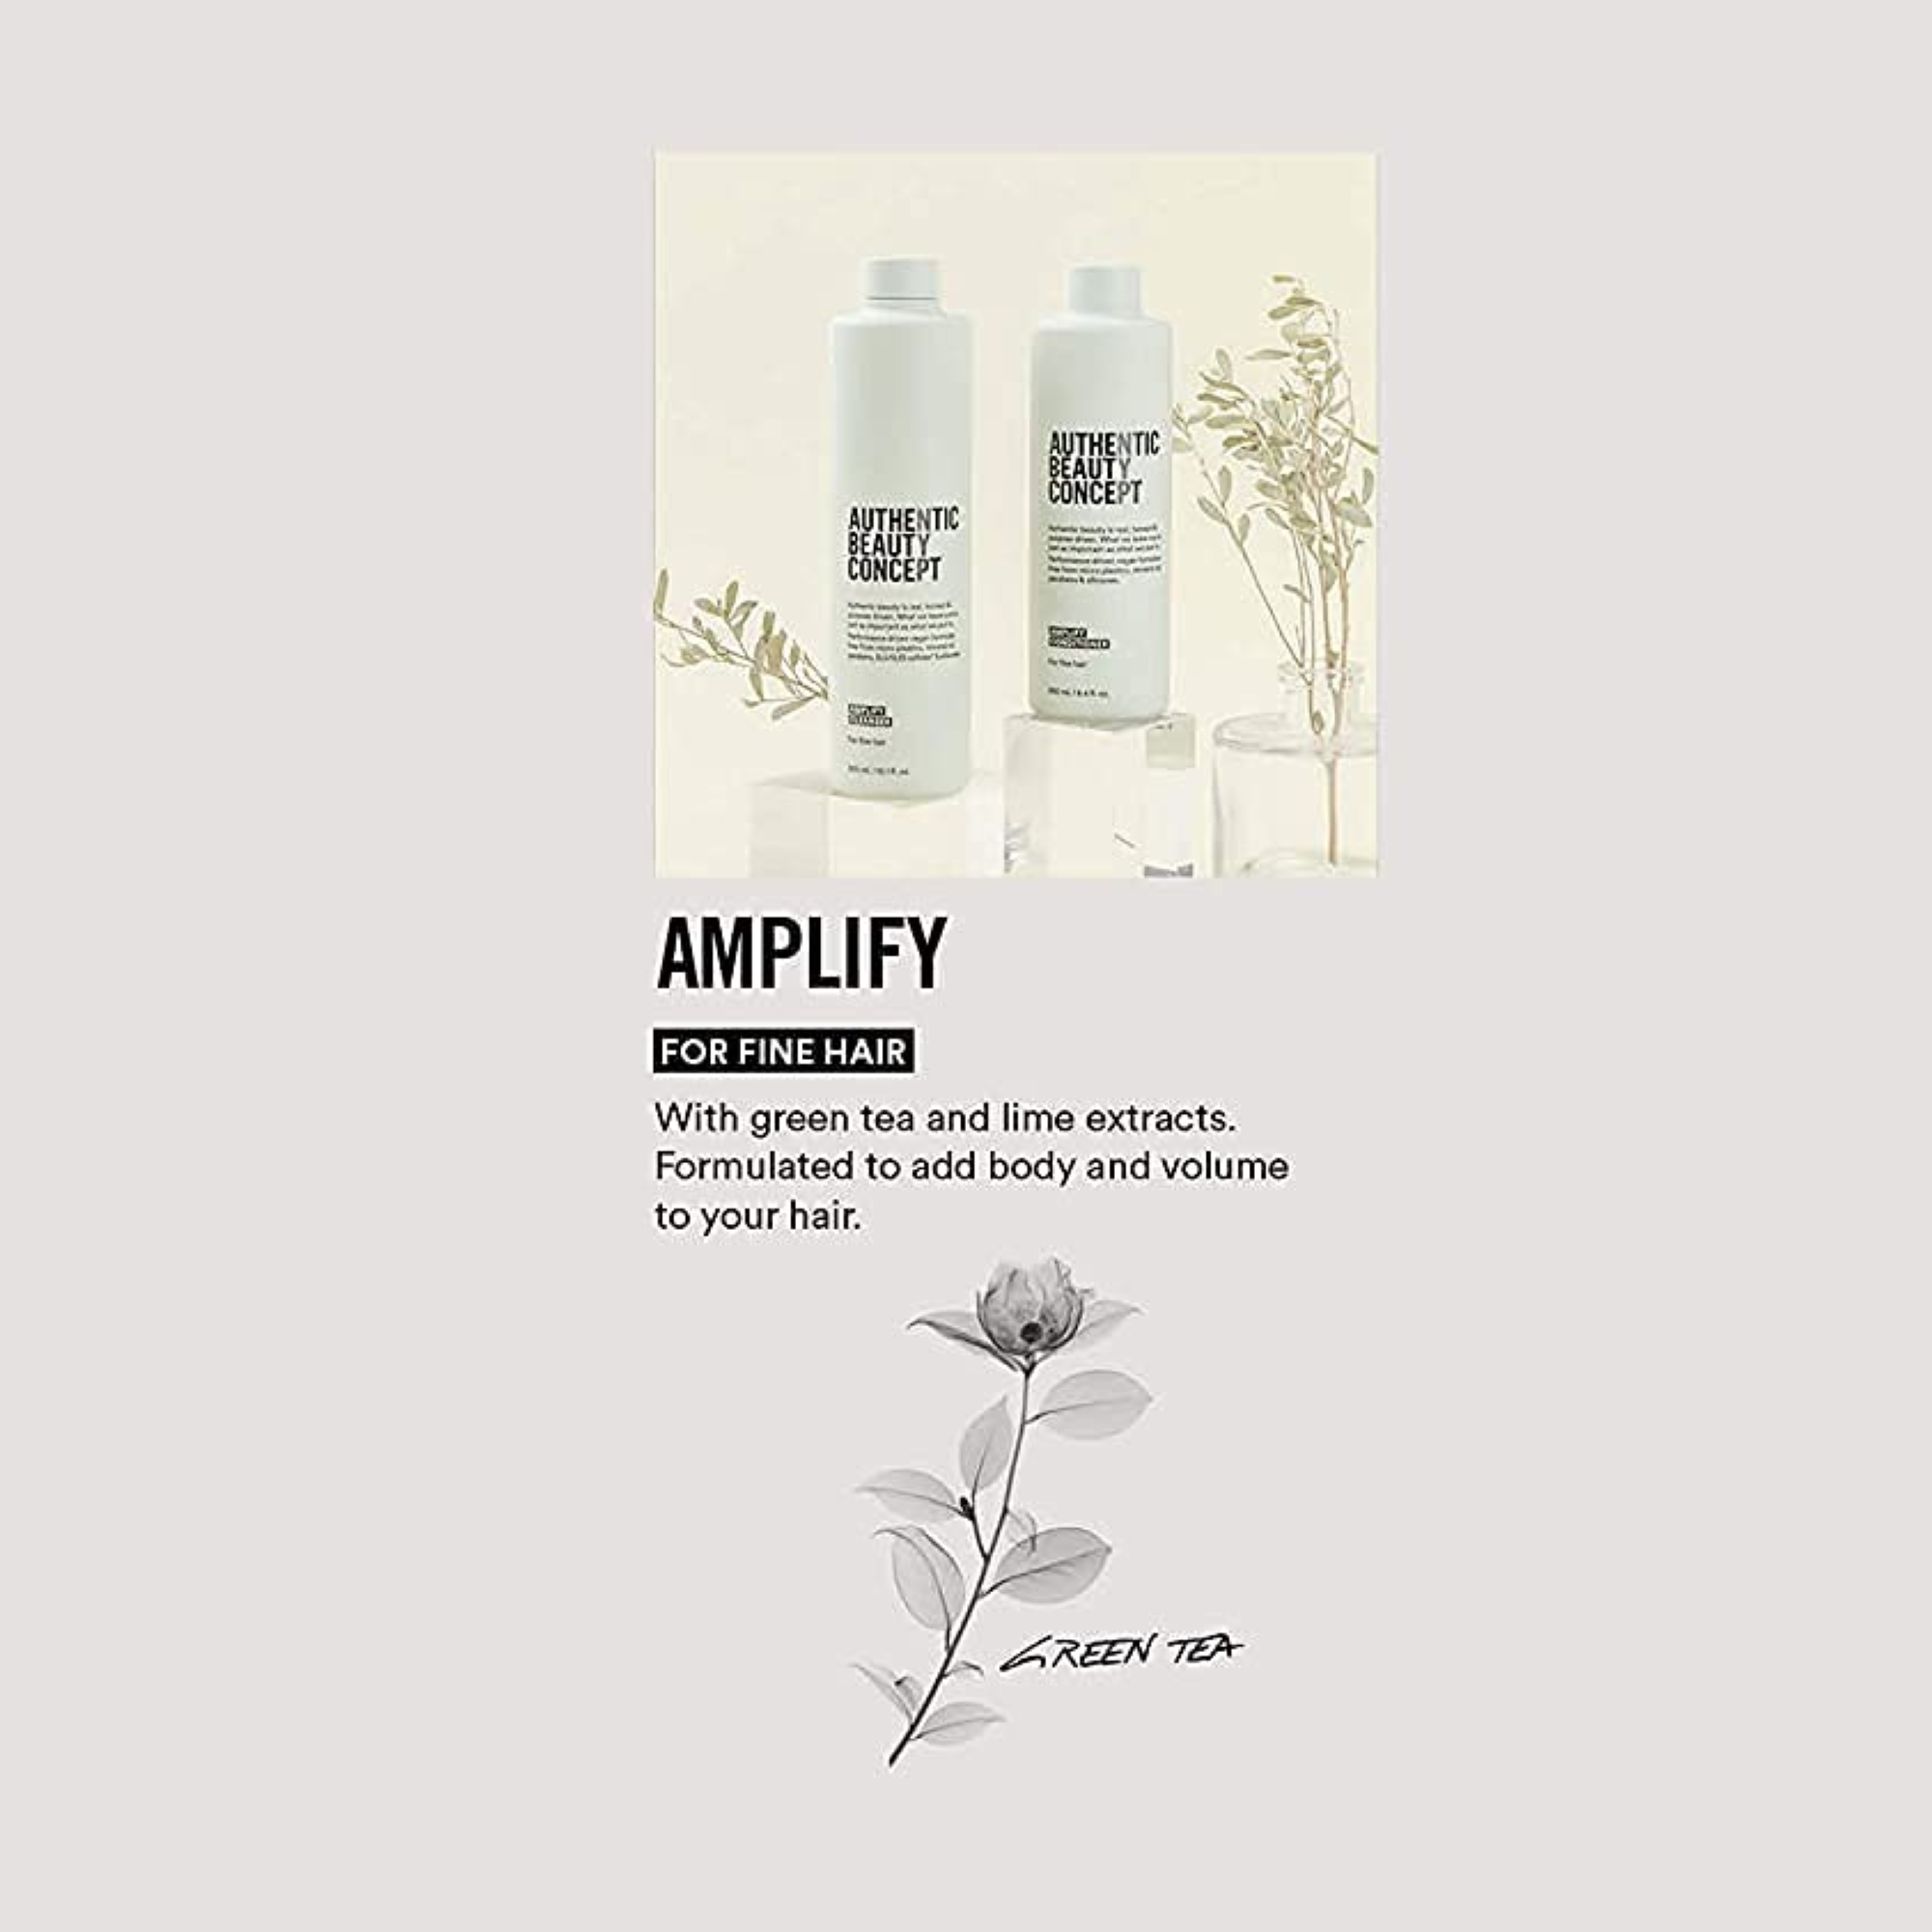 Authentic Beauty Concept Amplify Mousse / 6.7OZ